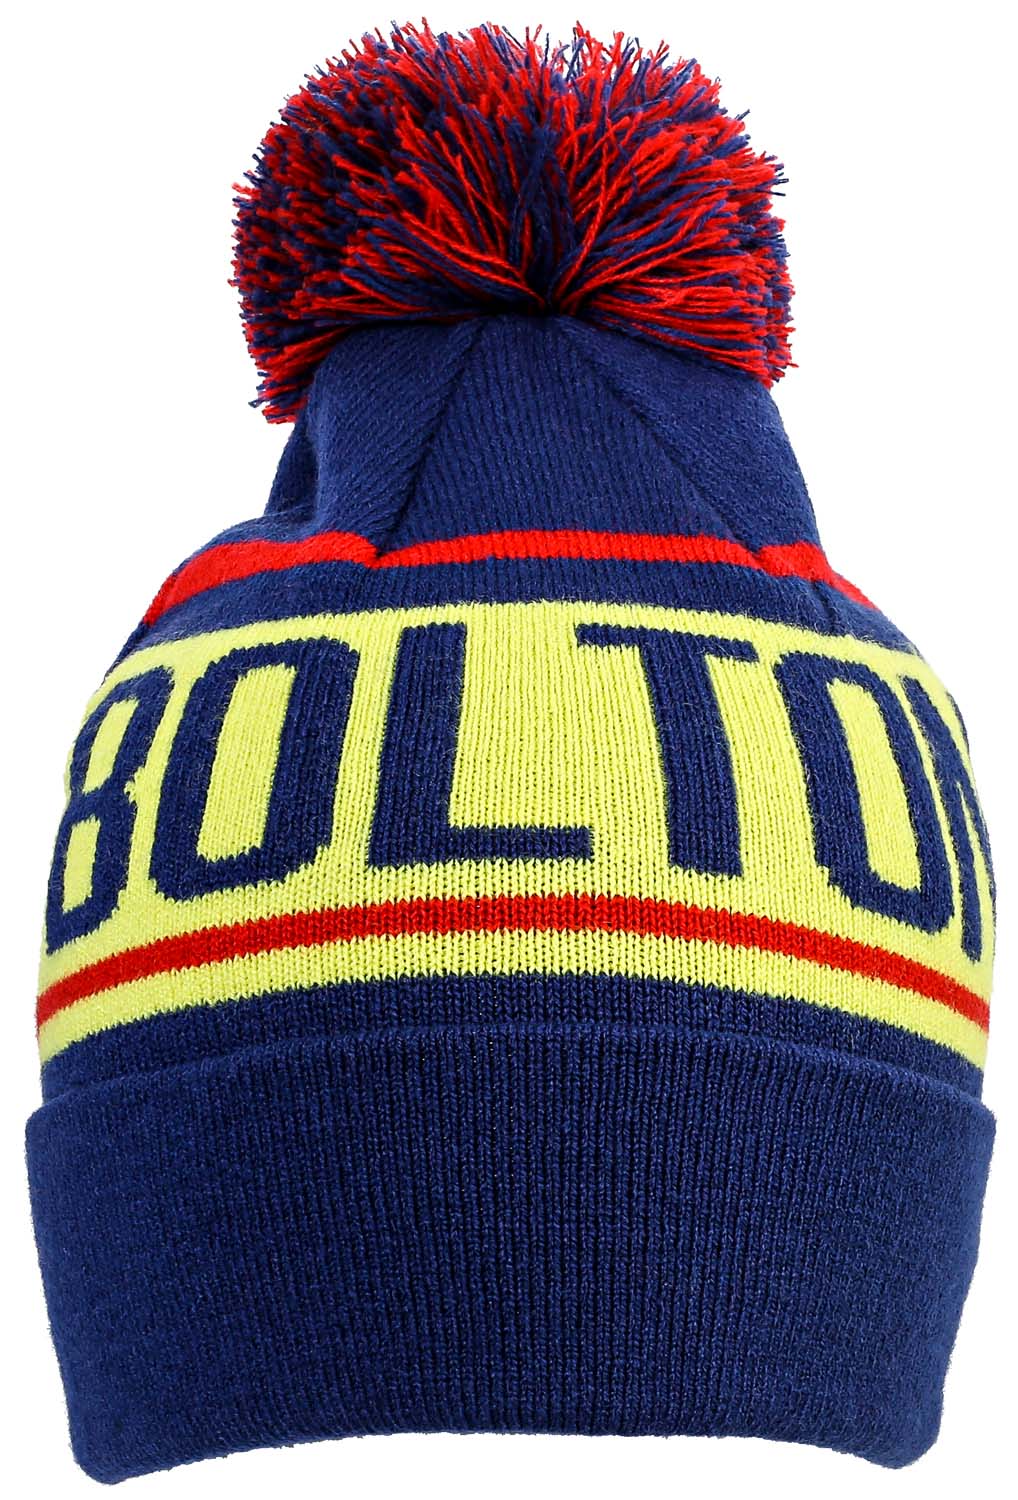 Bonnet - Colorful Bolton